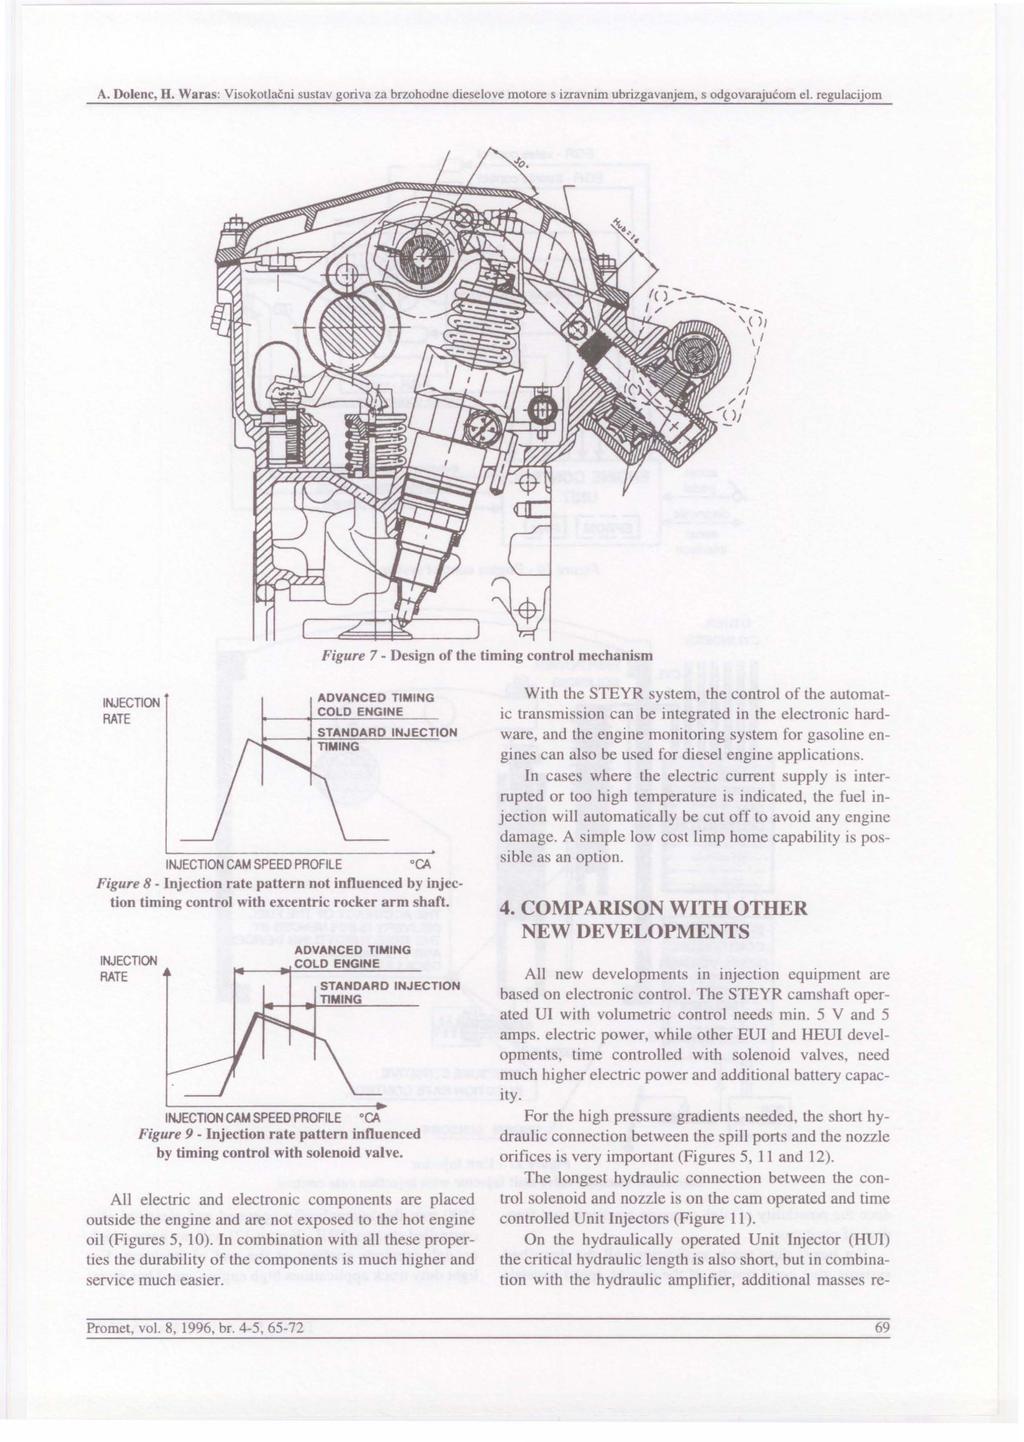 A. Dolenc, H. Waras: Visokotlacni sustav goriva za brzohodne dieselove motore s izravnim ubrizgavanjem, s odgovarajucom el.